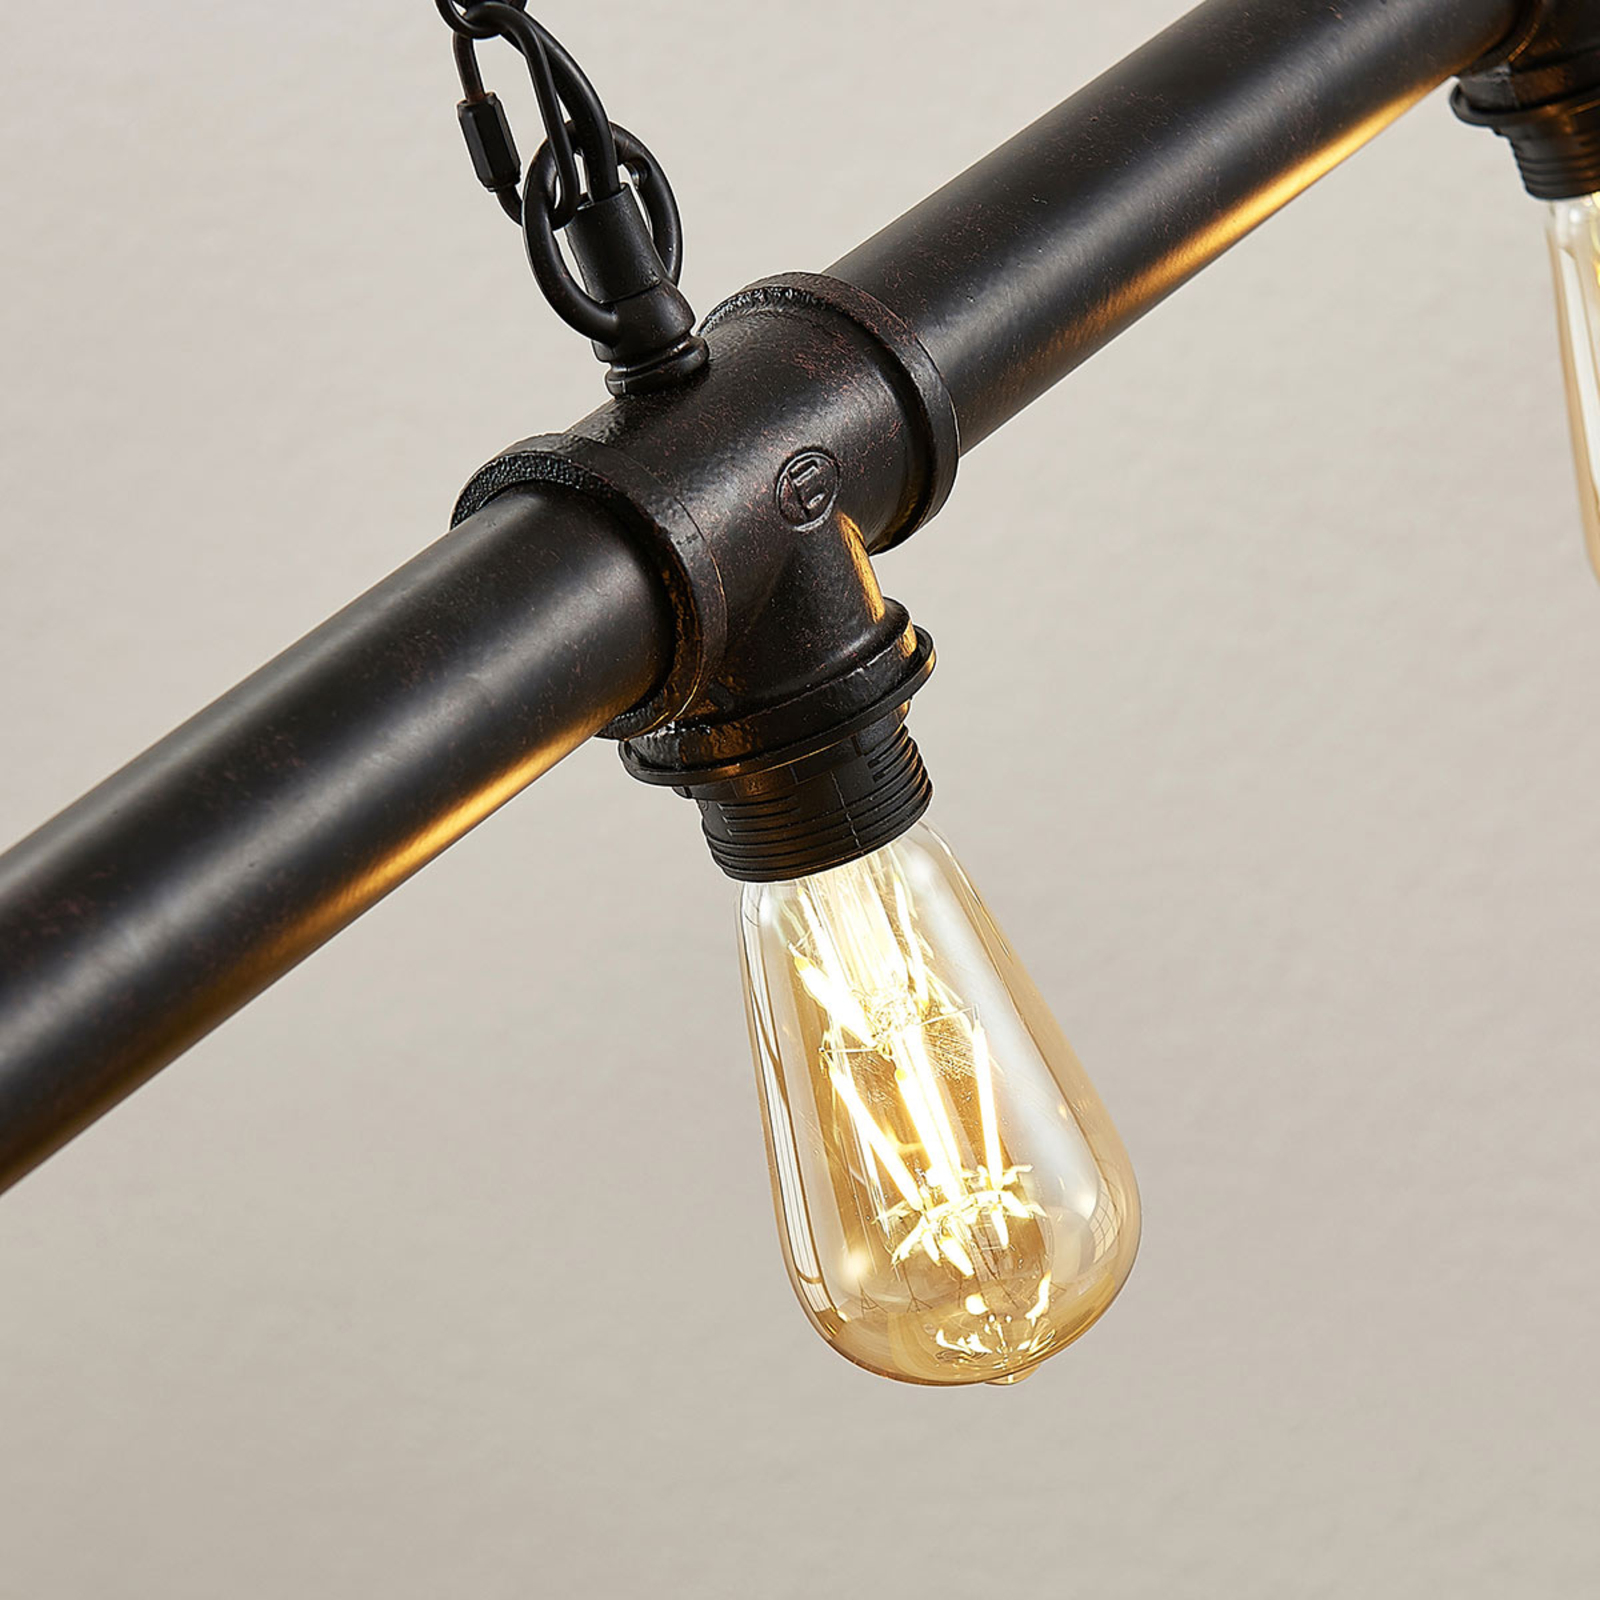 Josip linear pendant light in an industrial style